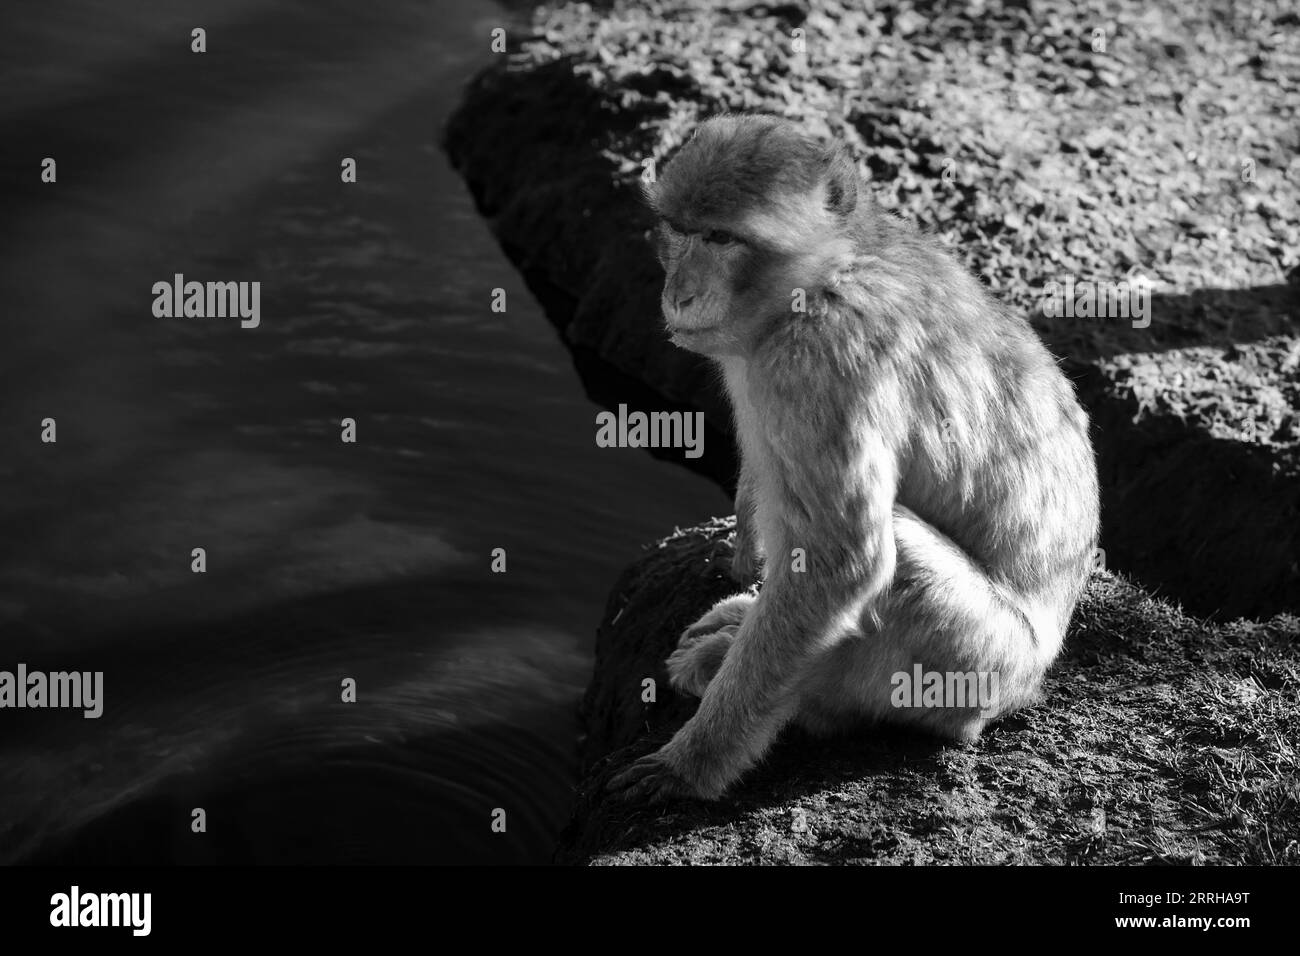 babbuino seduto sull'acqua. Grande scimmia in natura. pelliccia bianca marrone. mammifero intelligente. Immagine animale Foto Stock